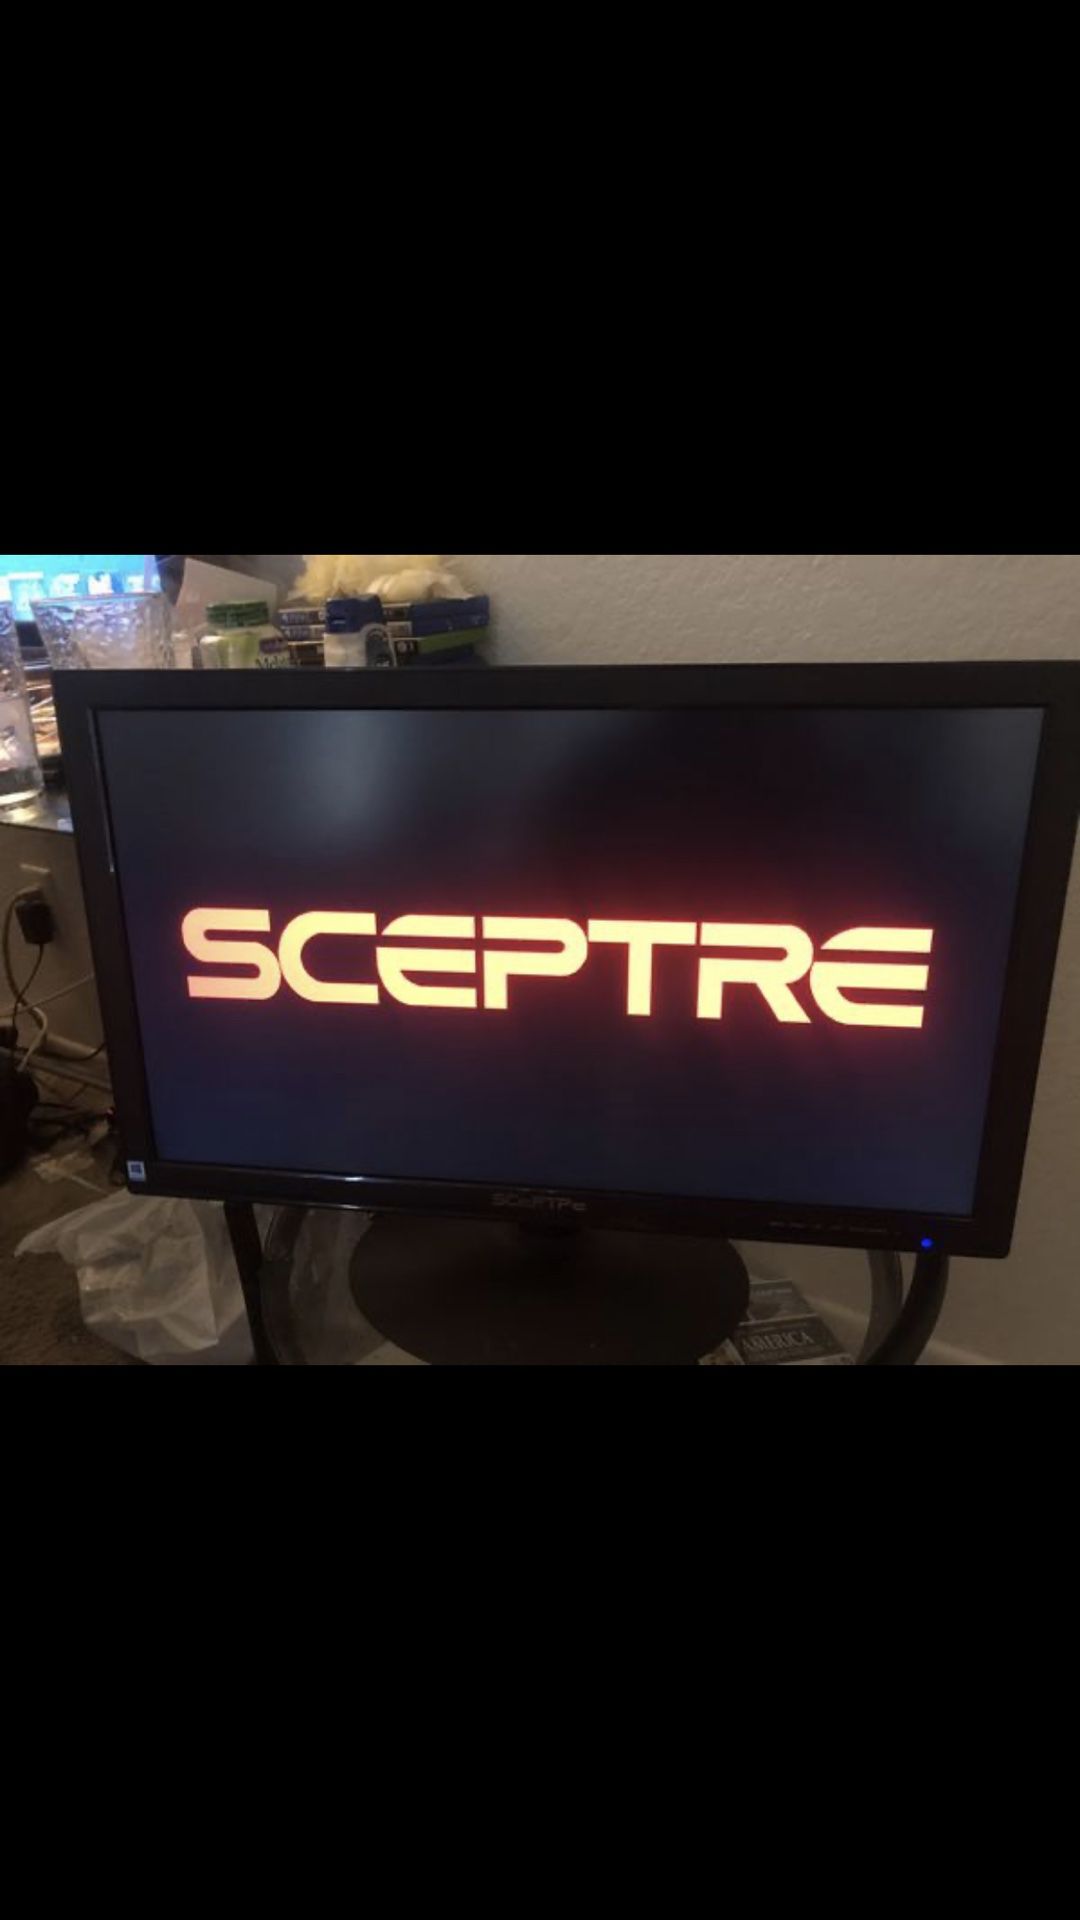 Sceptre monitor